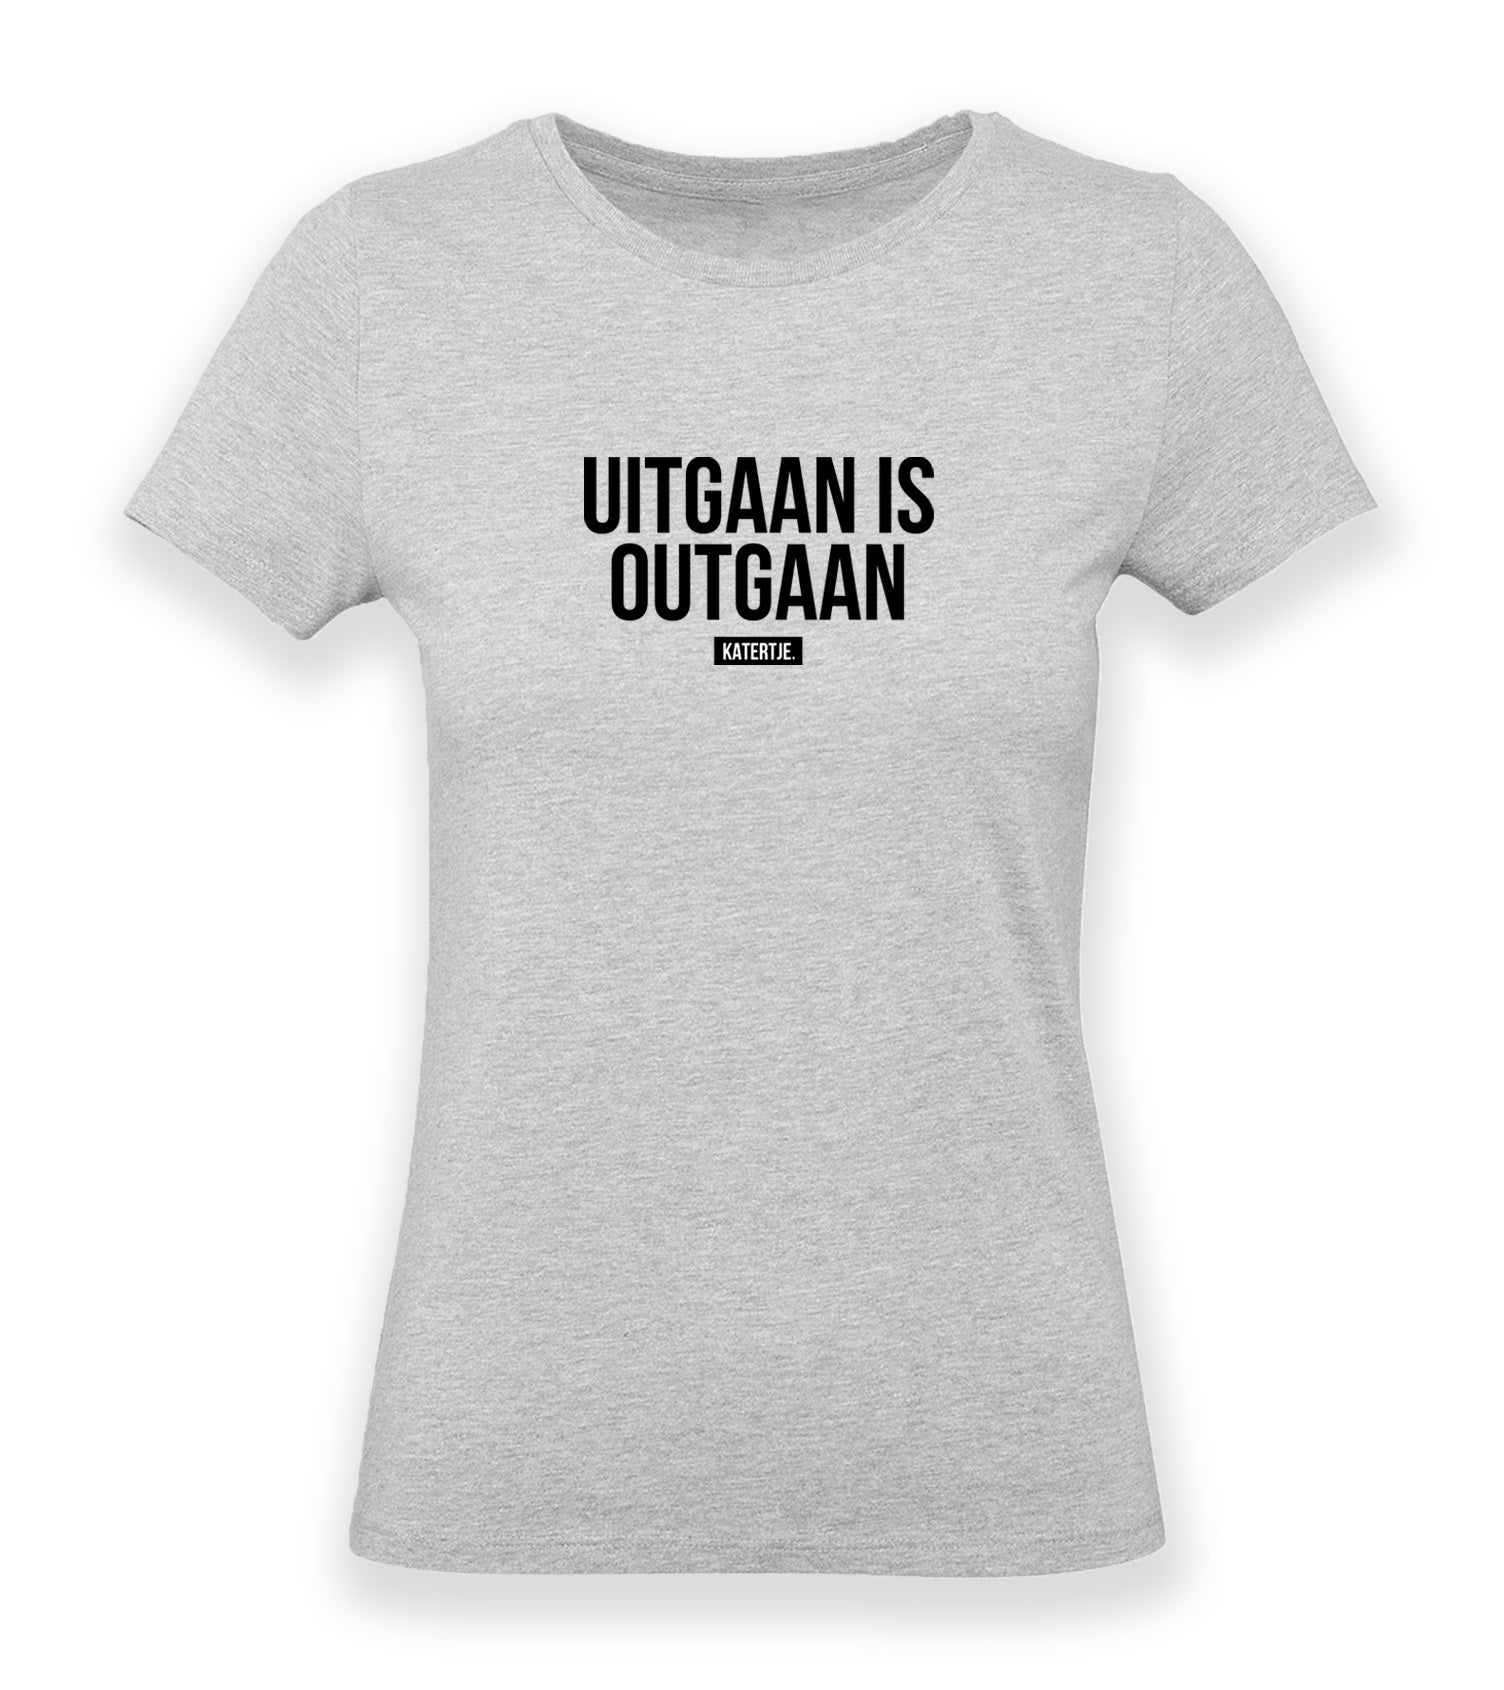 minimum seinpaal Verklaring Uitgaan is outgaan | Women Premium Organic T-shirt – KATERTJE.